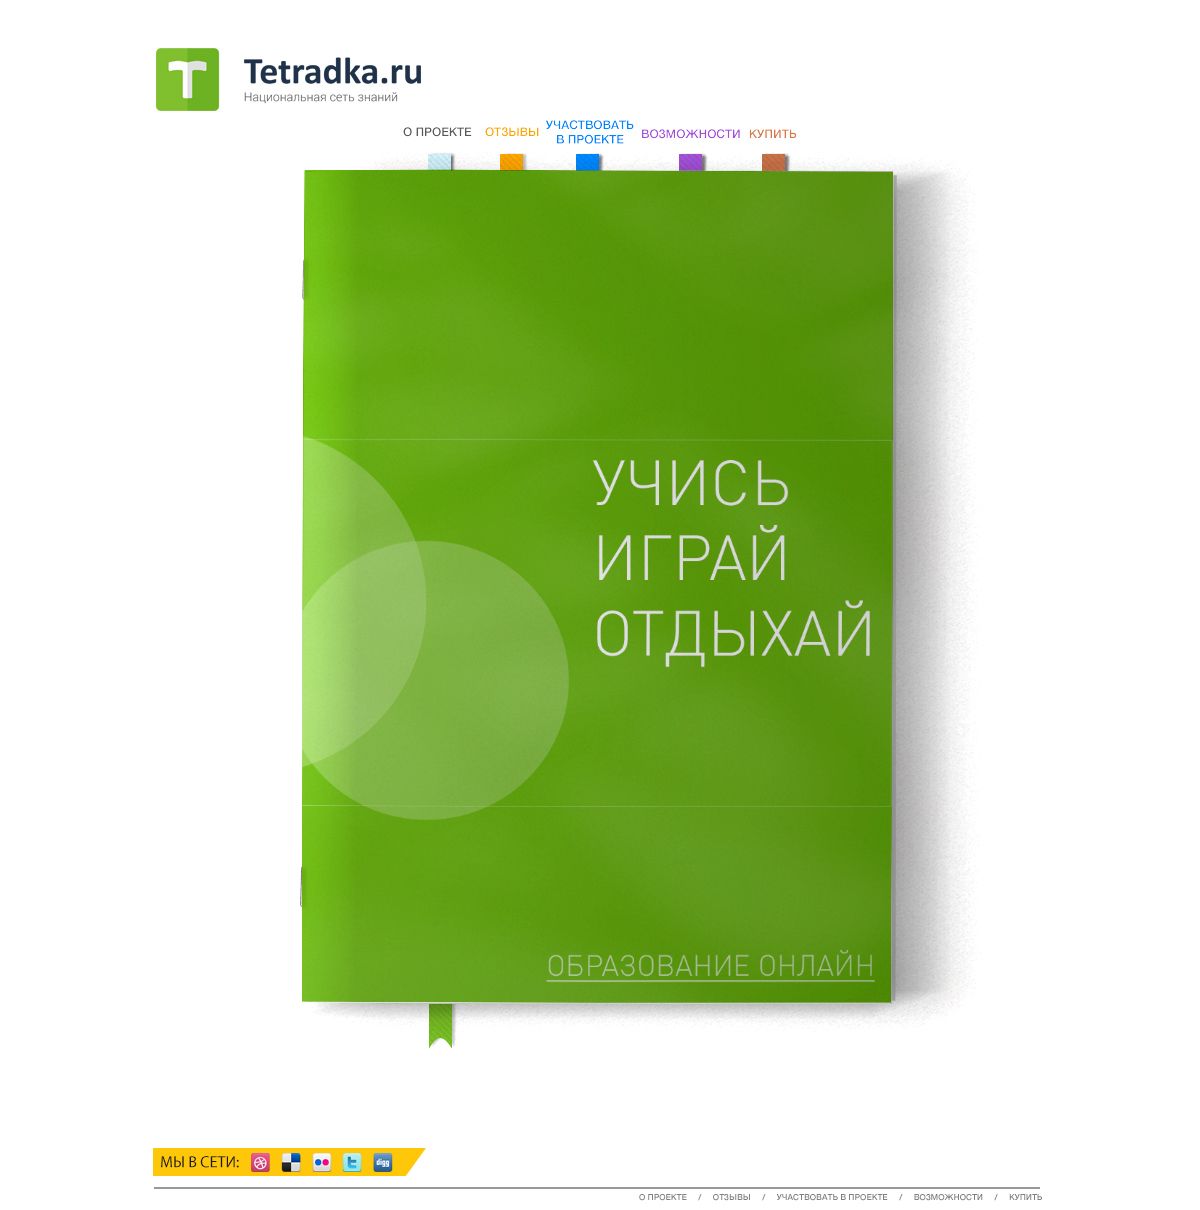 Главная страница образовательной сети tetradka.ru - дизайнер Harmful_girl